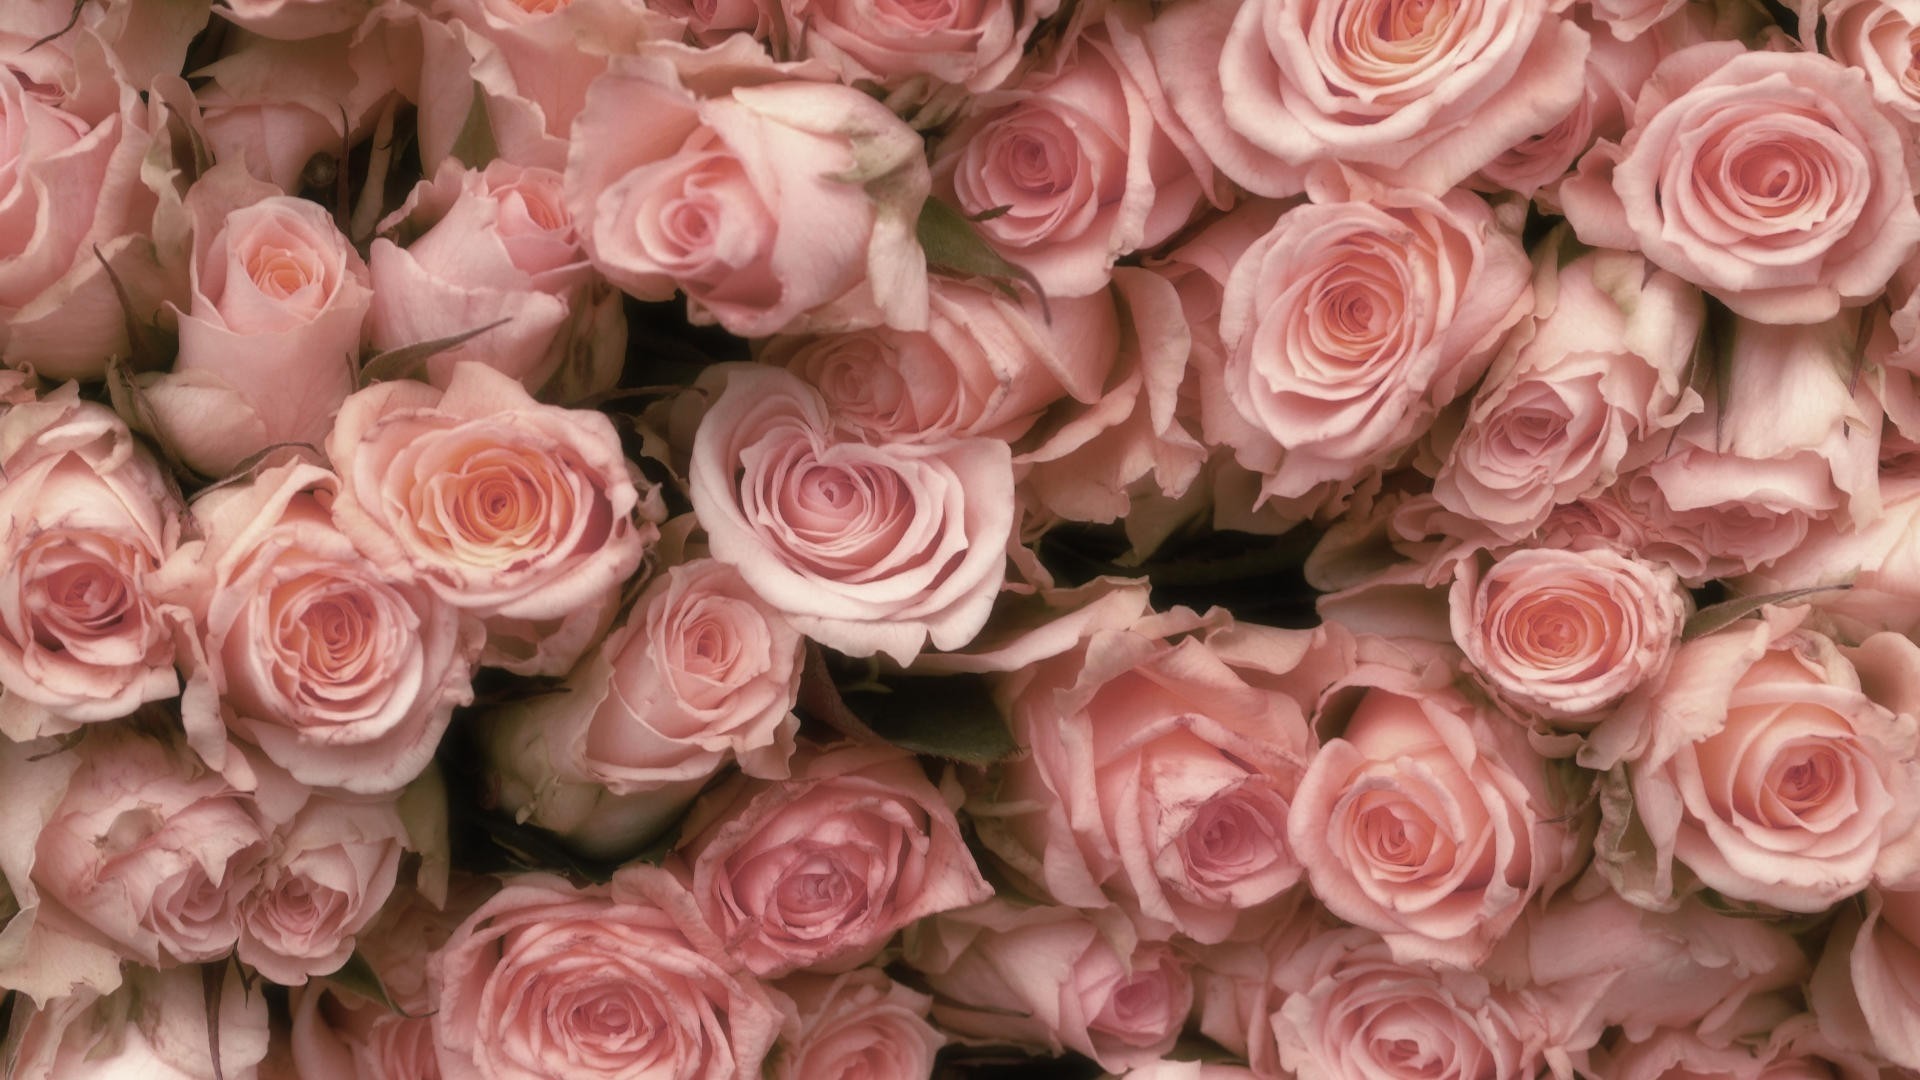 1920x1080 Pink Rose Backgrounds Â·â 